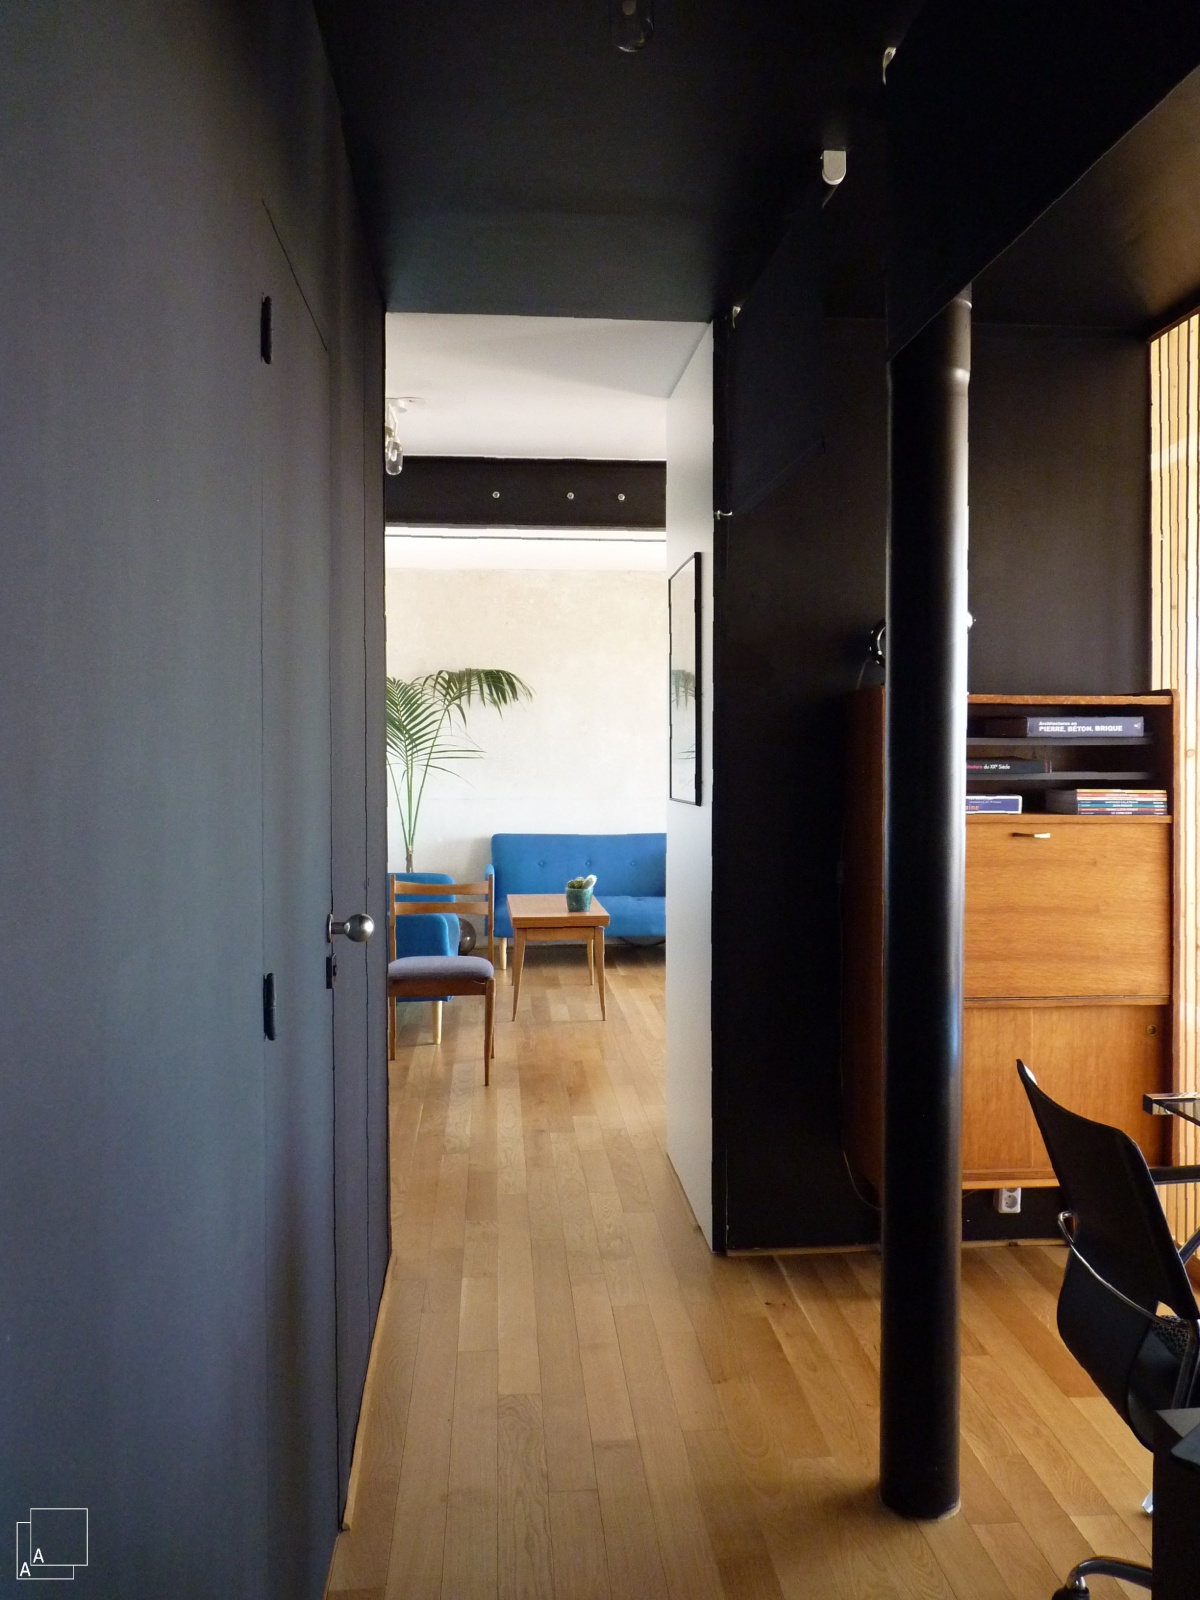 Transformation dun appartement  la belle vue  : couloir-peinture-noir-marseille-azzaro-architecte-min-min.JPG